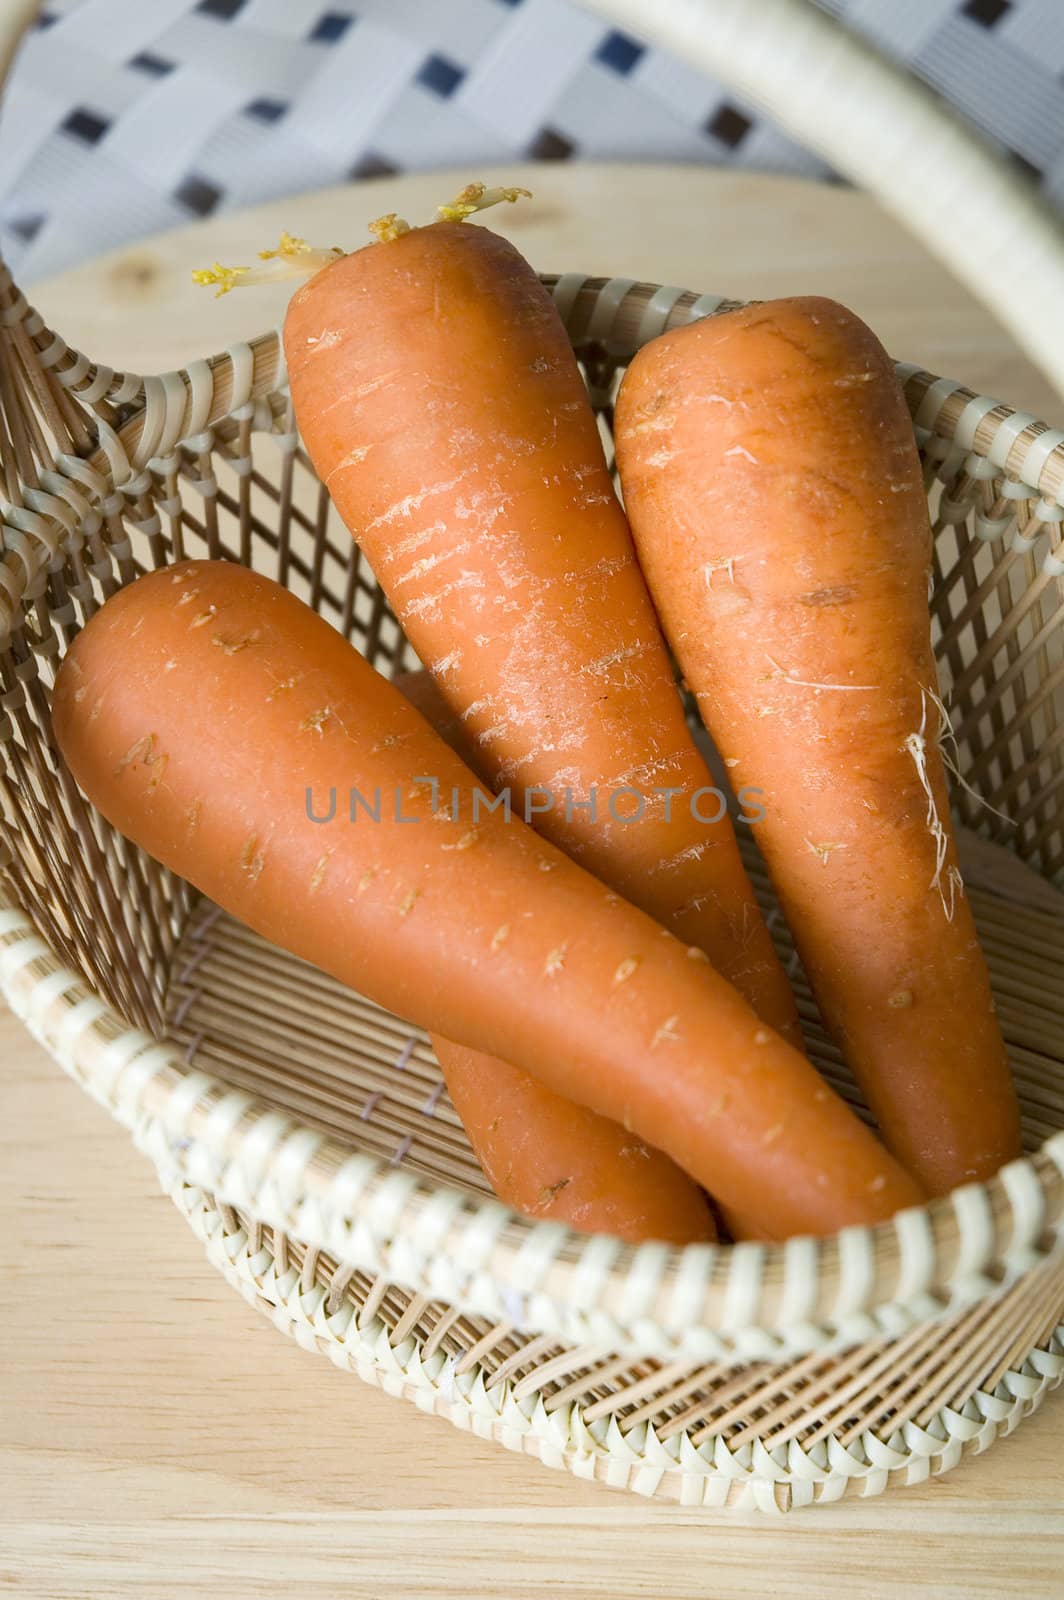 fresh carrot put in basket